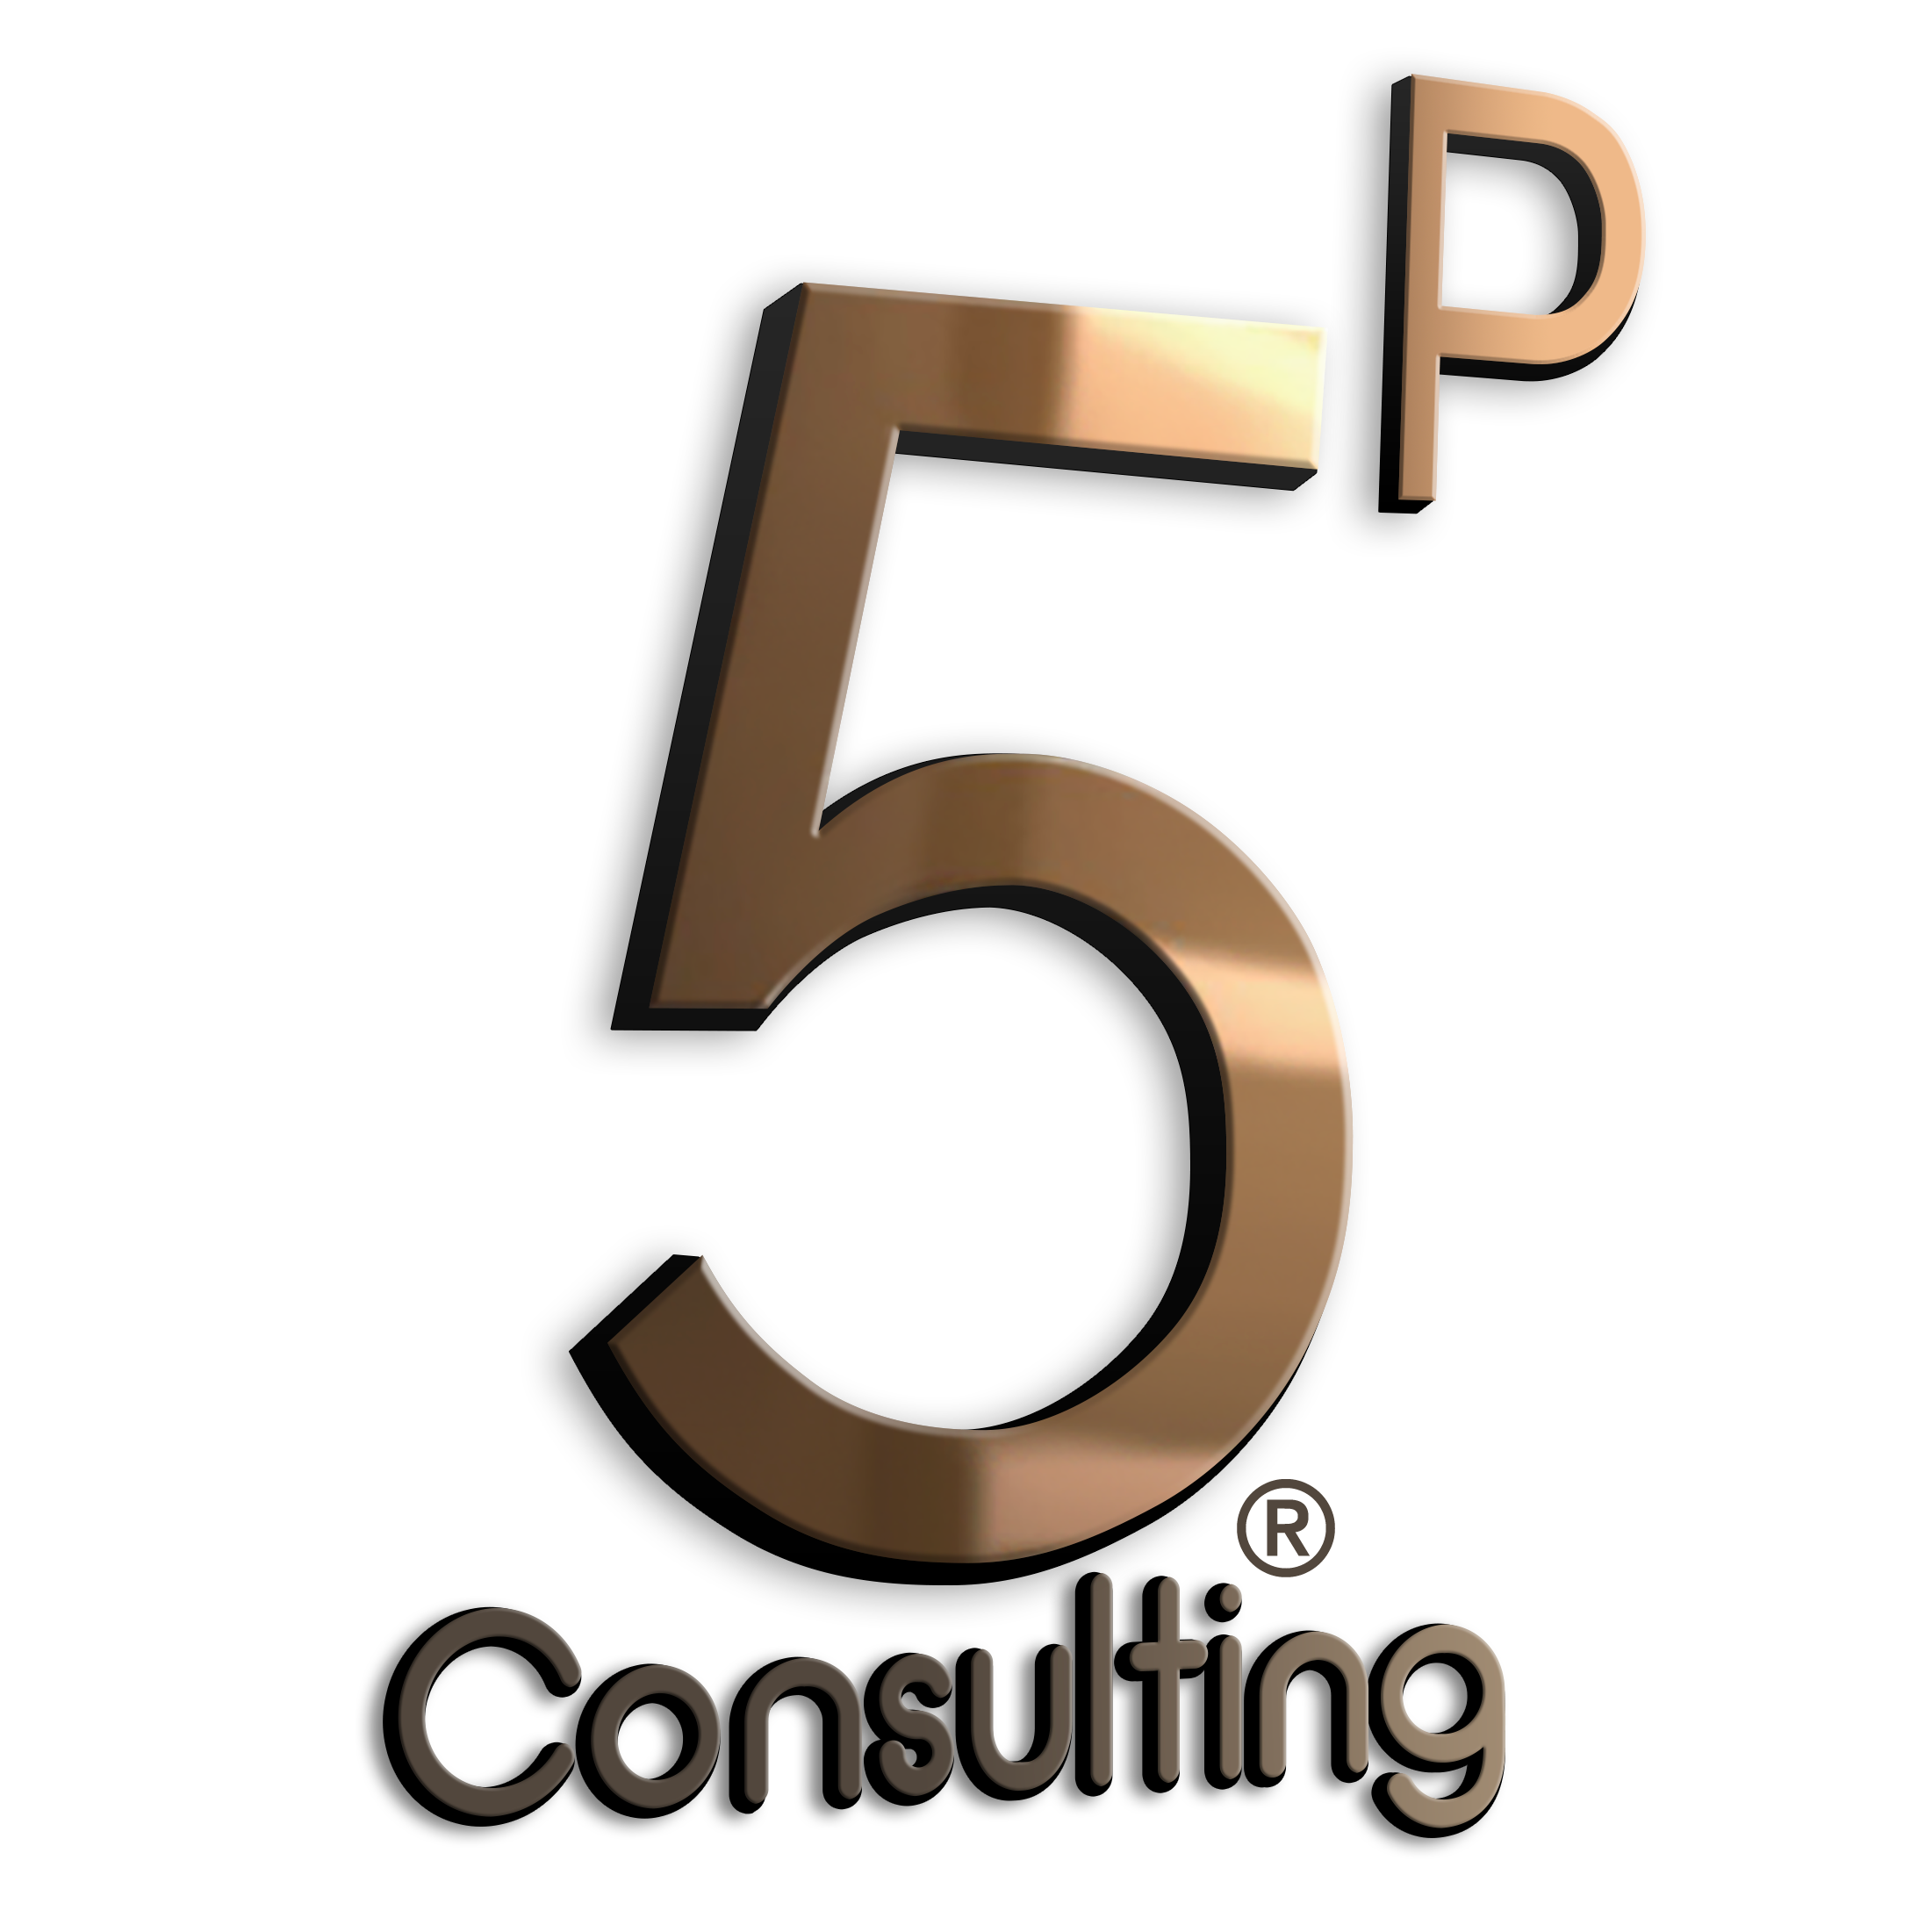 5P Consulting - Encinitas, CA 92024 - (760)652-9127 | ShowMeLocal.com